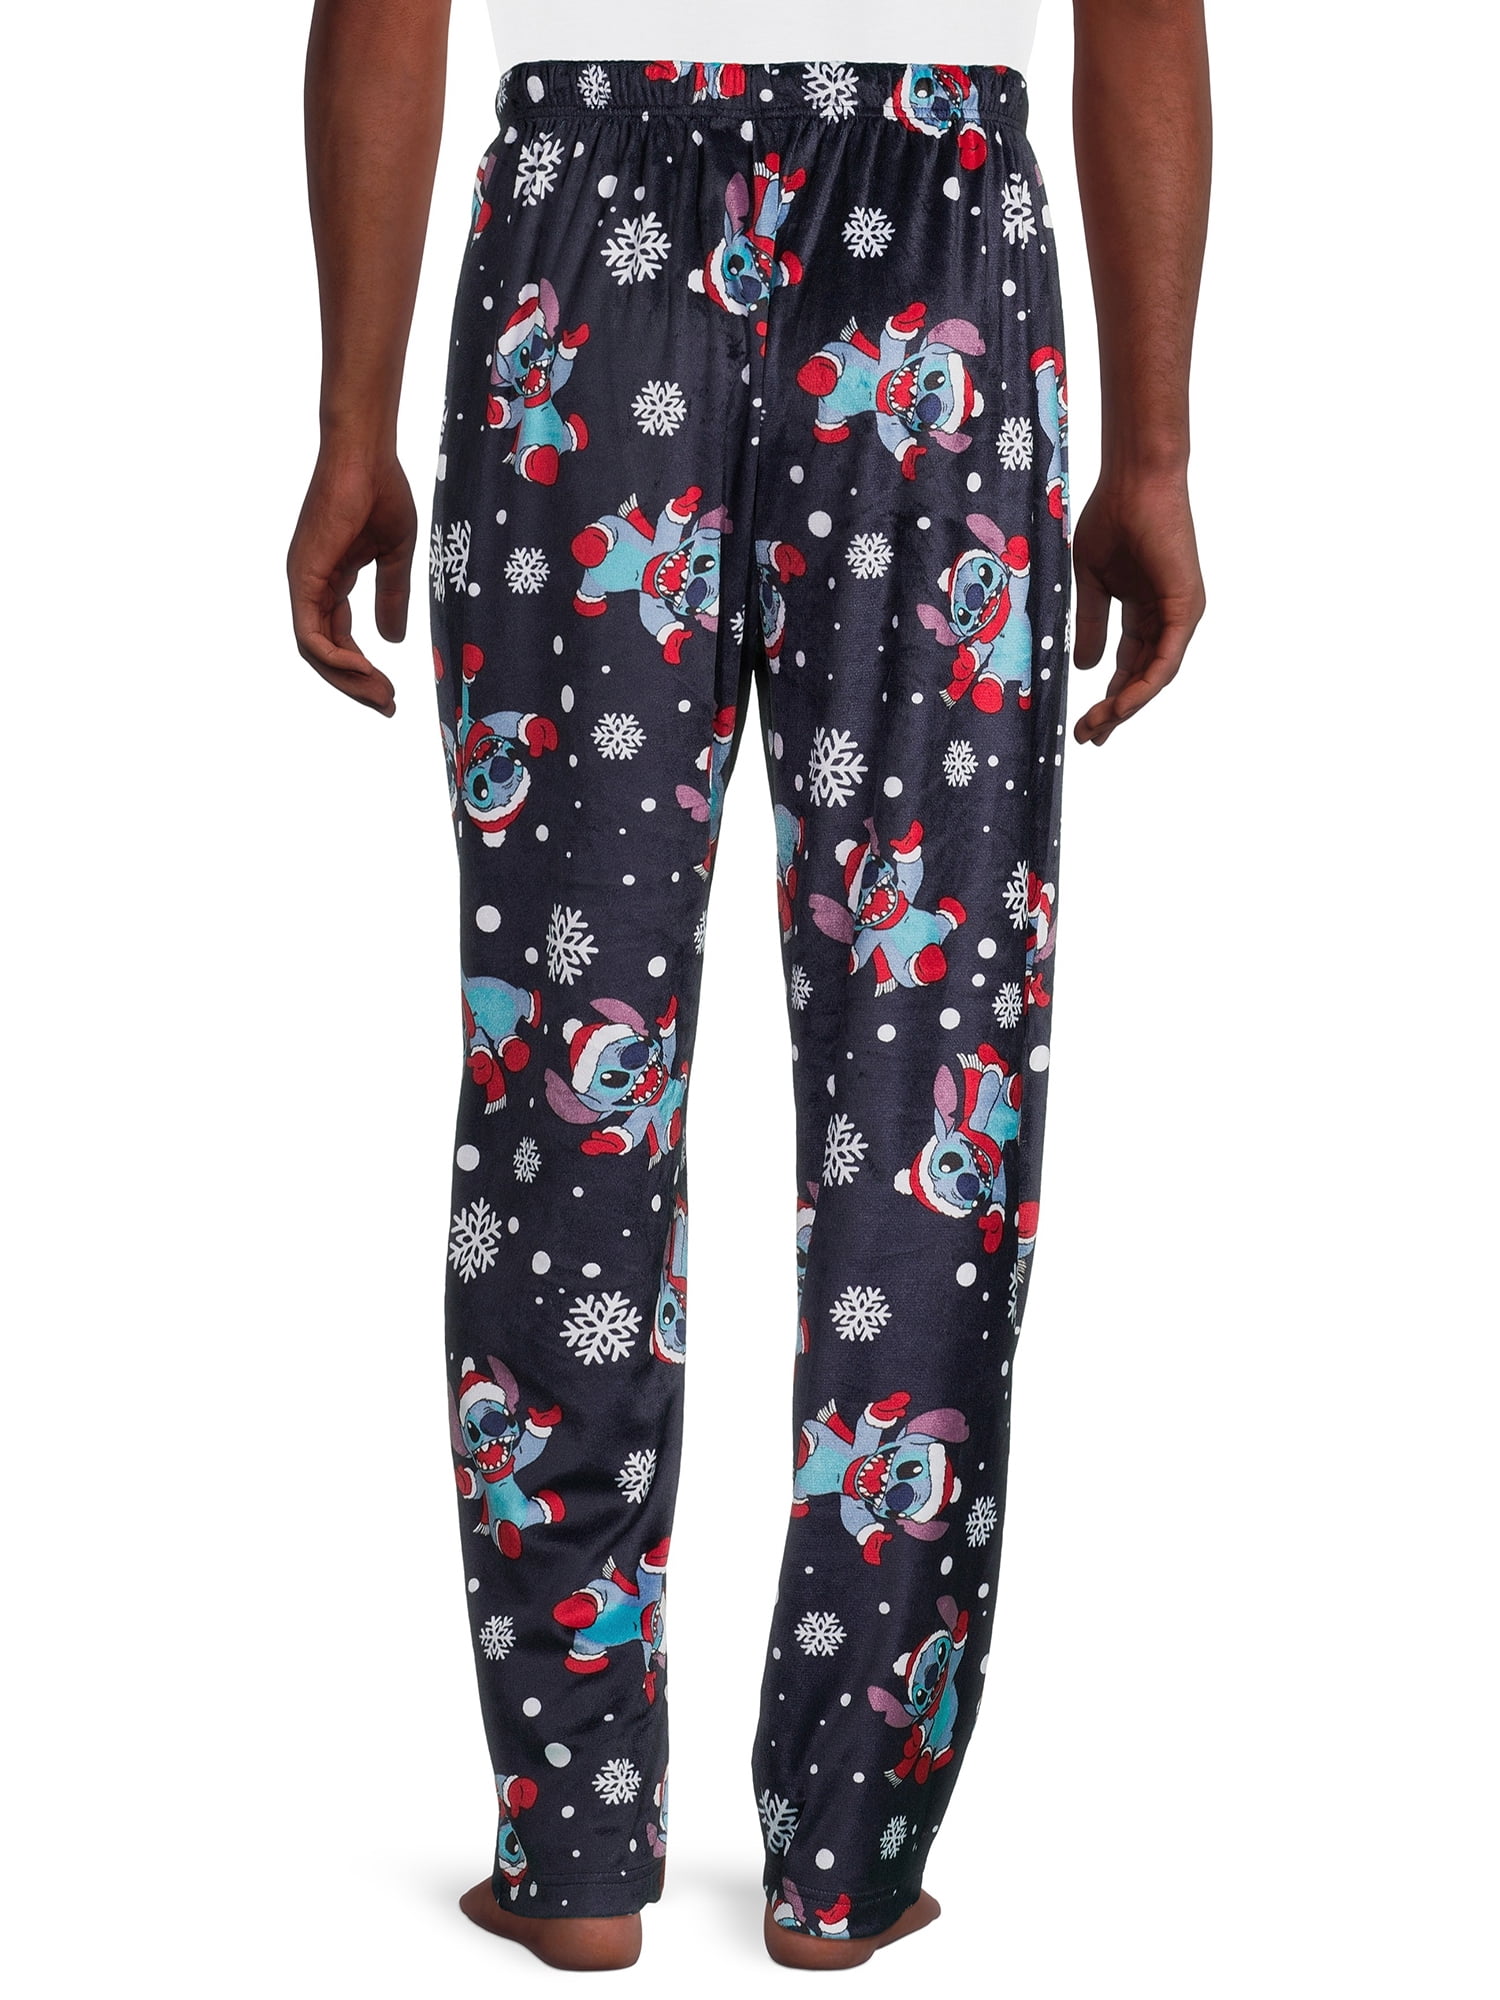 Wondershop At Target Mens Red Cotton Plaid Drawstring Pajama Pants Size XL  Tall | eBay